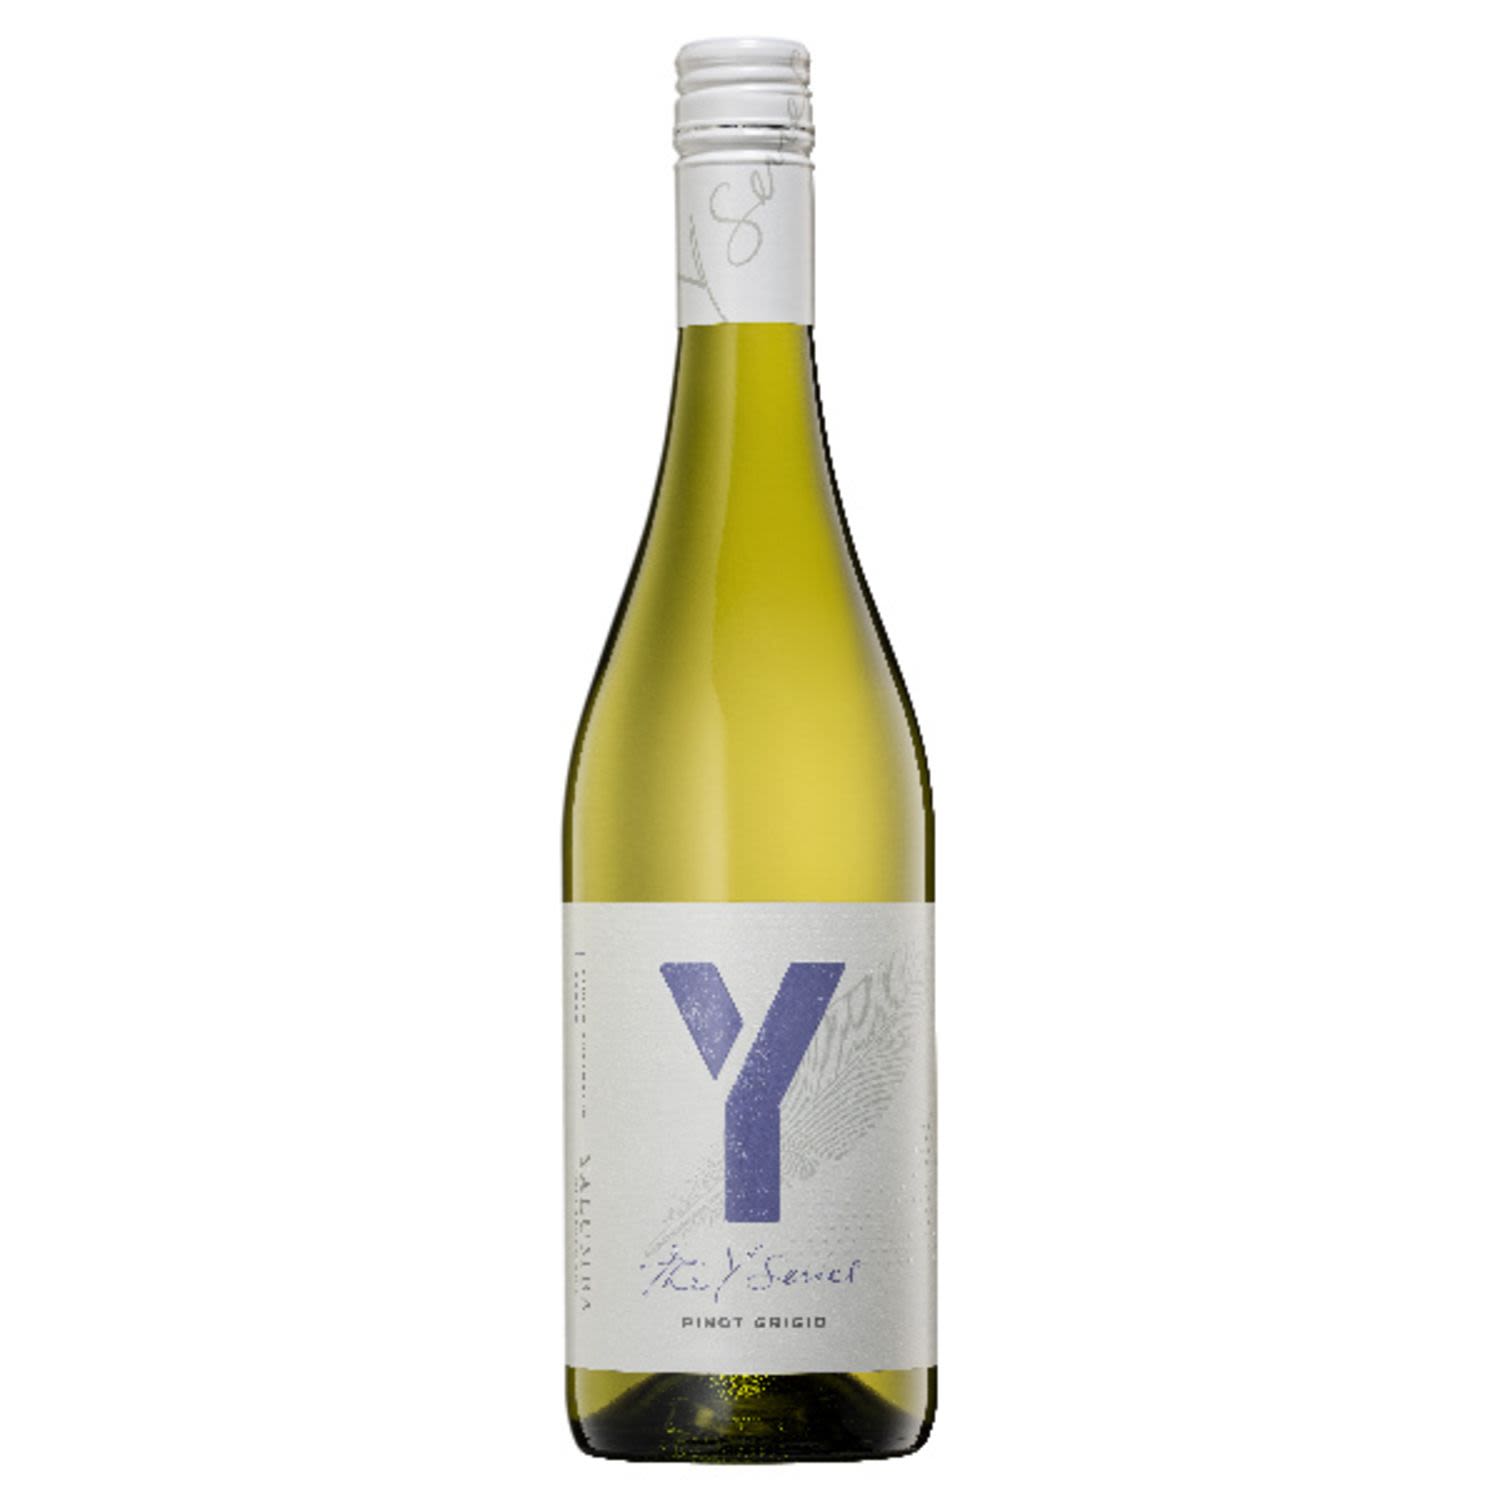 Yalumba Y Series Pinot Grigio<br /> <br />Alcohol Volume: 12.50%<br /><br />Pack Format: Bottle<br /><br />Standard Drinks: 7.4<br /><br />Pack Type: Bottle<br /><br />Country of Origin: Australia<br /><br />Region: n/a<br /><br />Vintage: '2018<br />